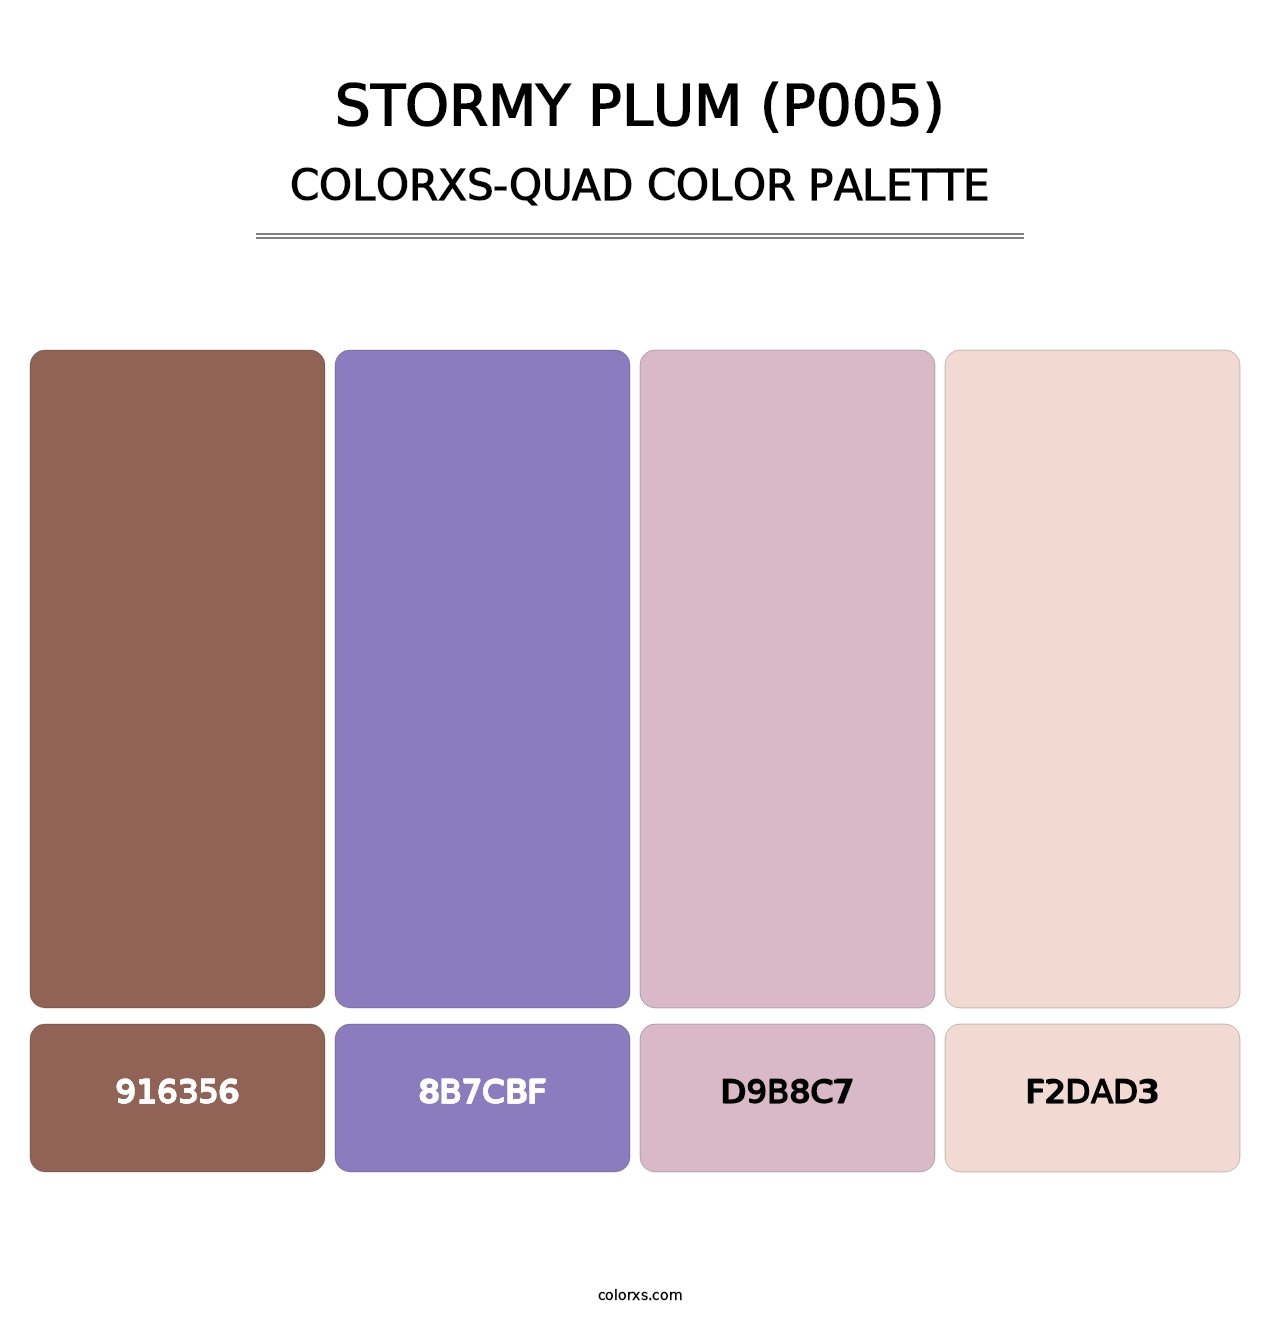 Stormy Plum (P005) - Colorxs Quad Palette